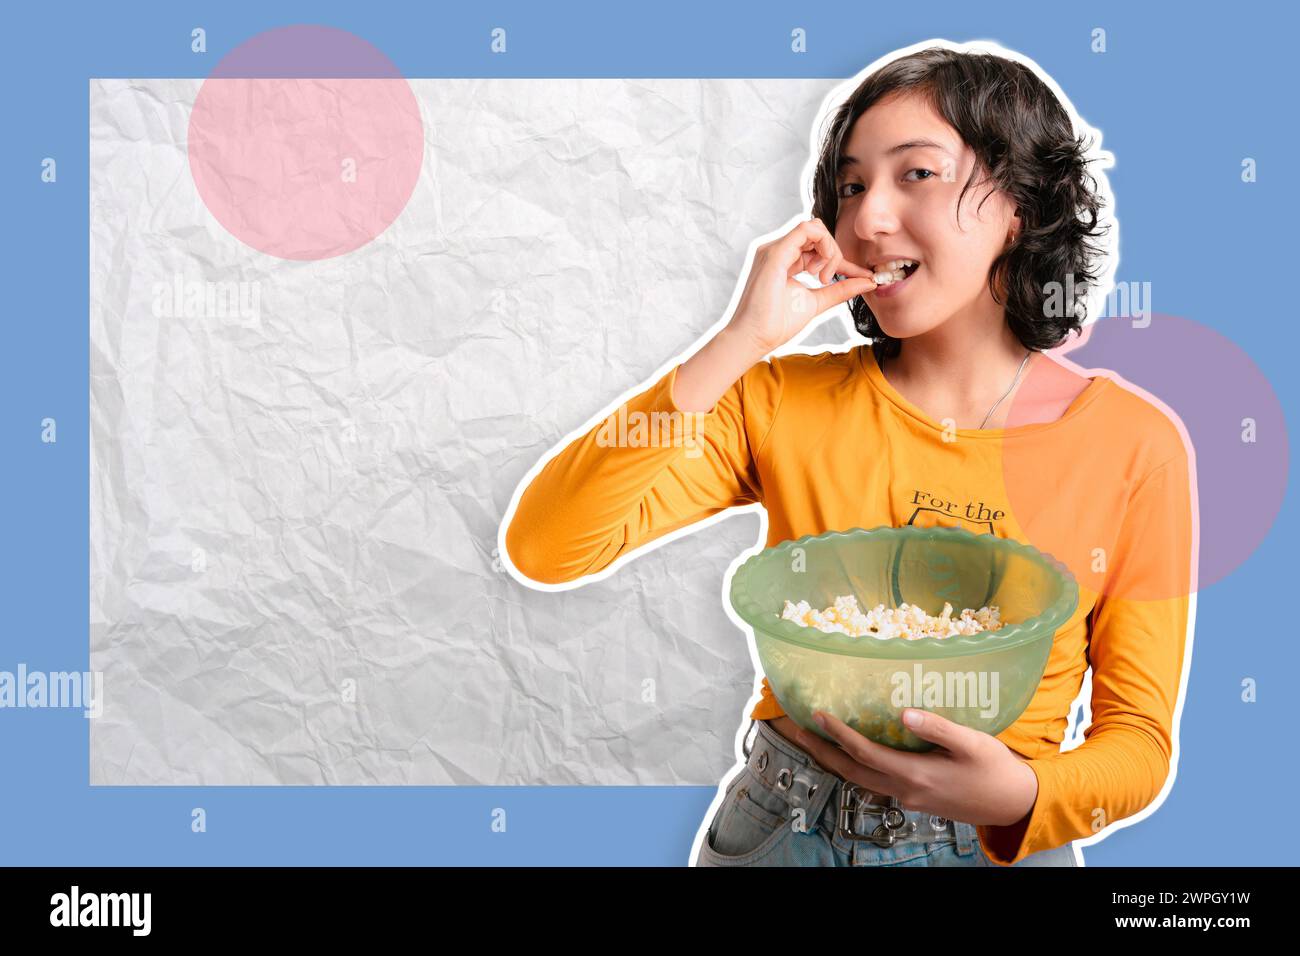 Foto creativa, collage, chica joven en un fondo colorido hace expresiones, ella está comiendo palomitas de maíz, banner para las redes sociales. Foto de stock